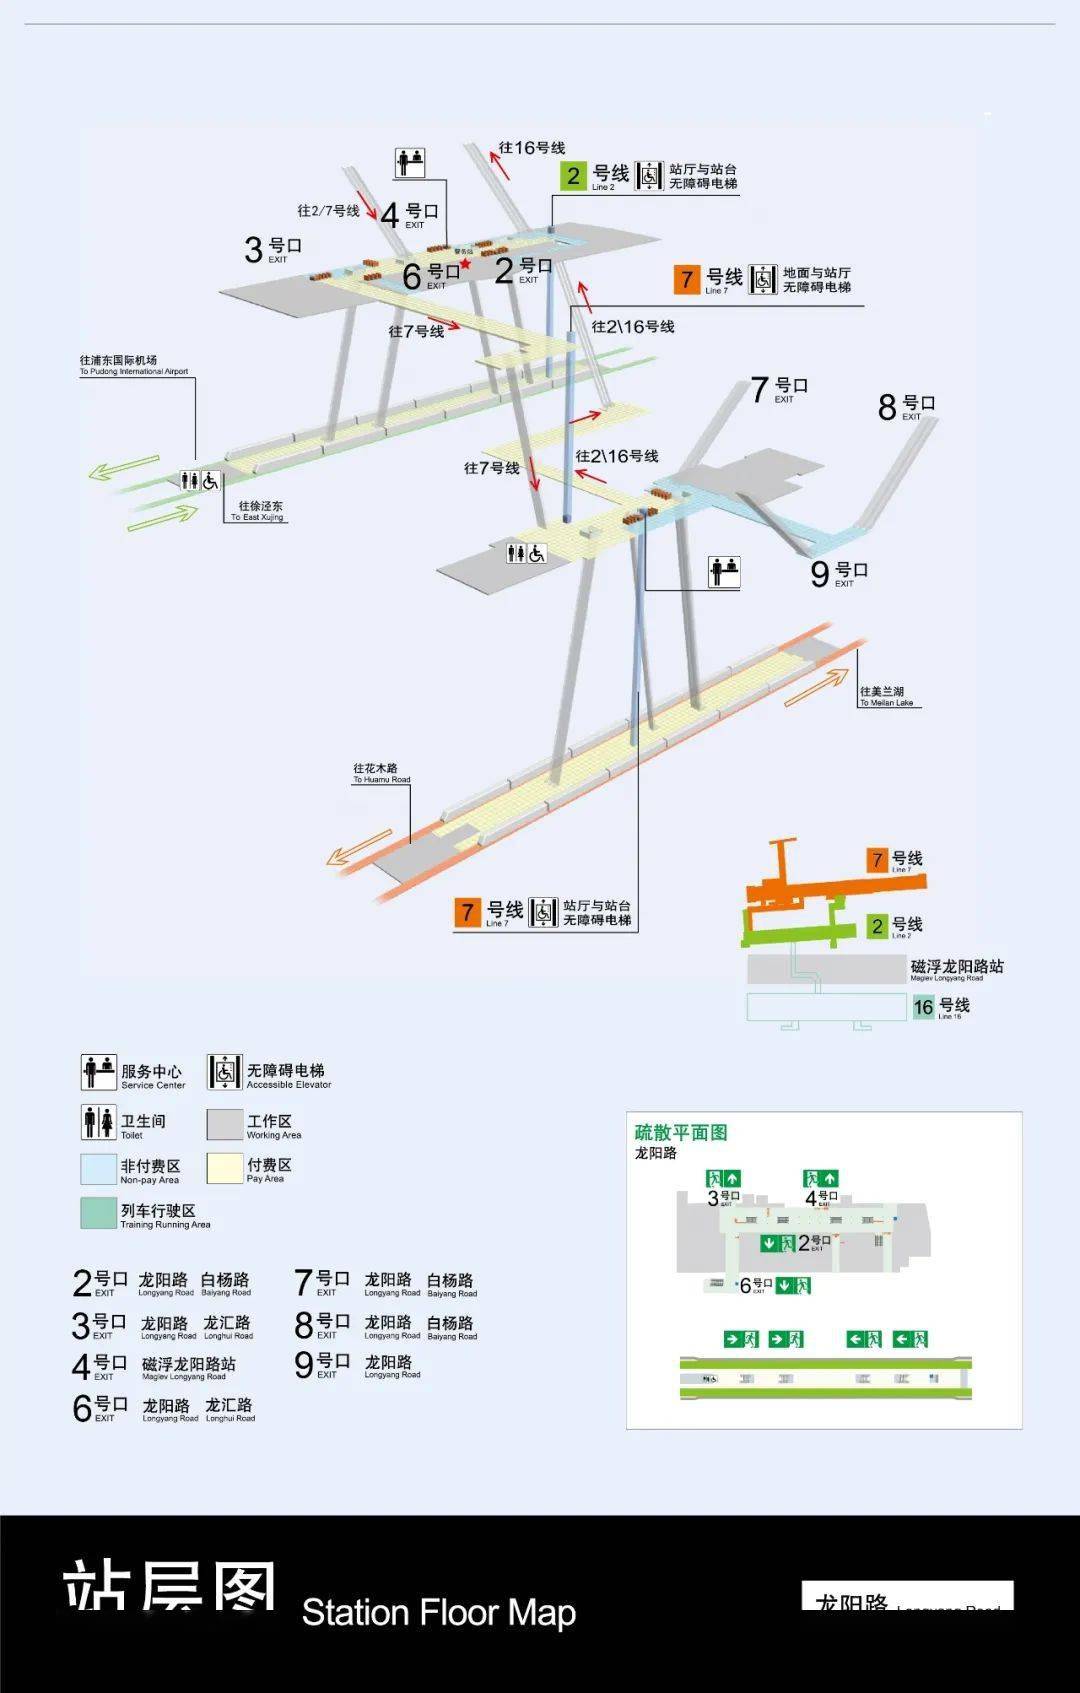 12号线,13号线南京西路站可换乘2号线,10号线,17号线虹桥火车站可换乘